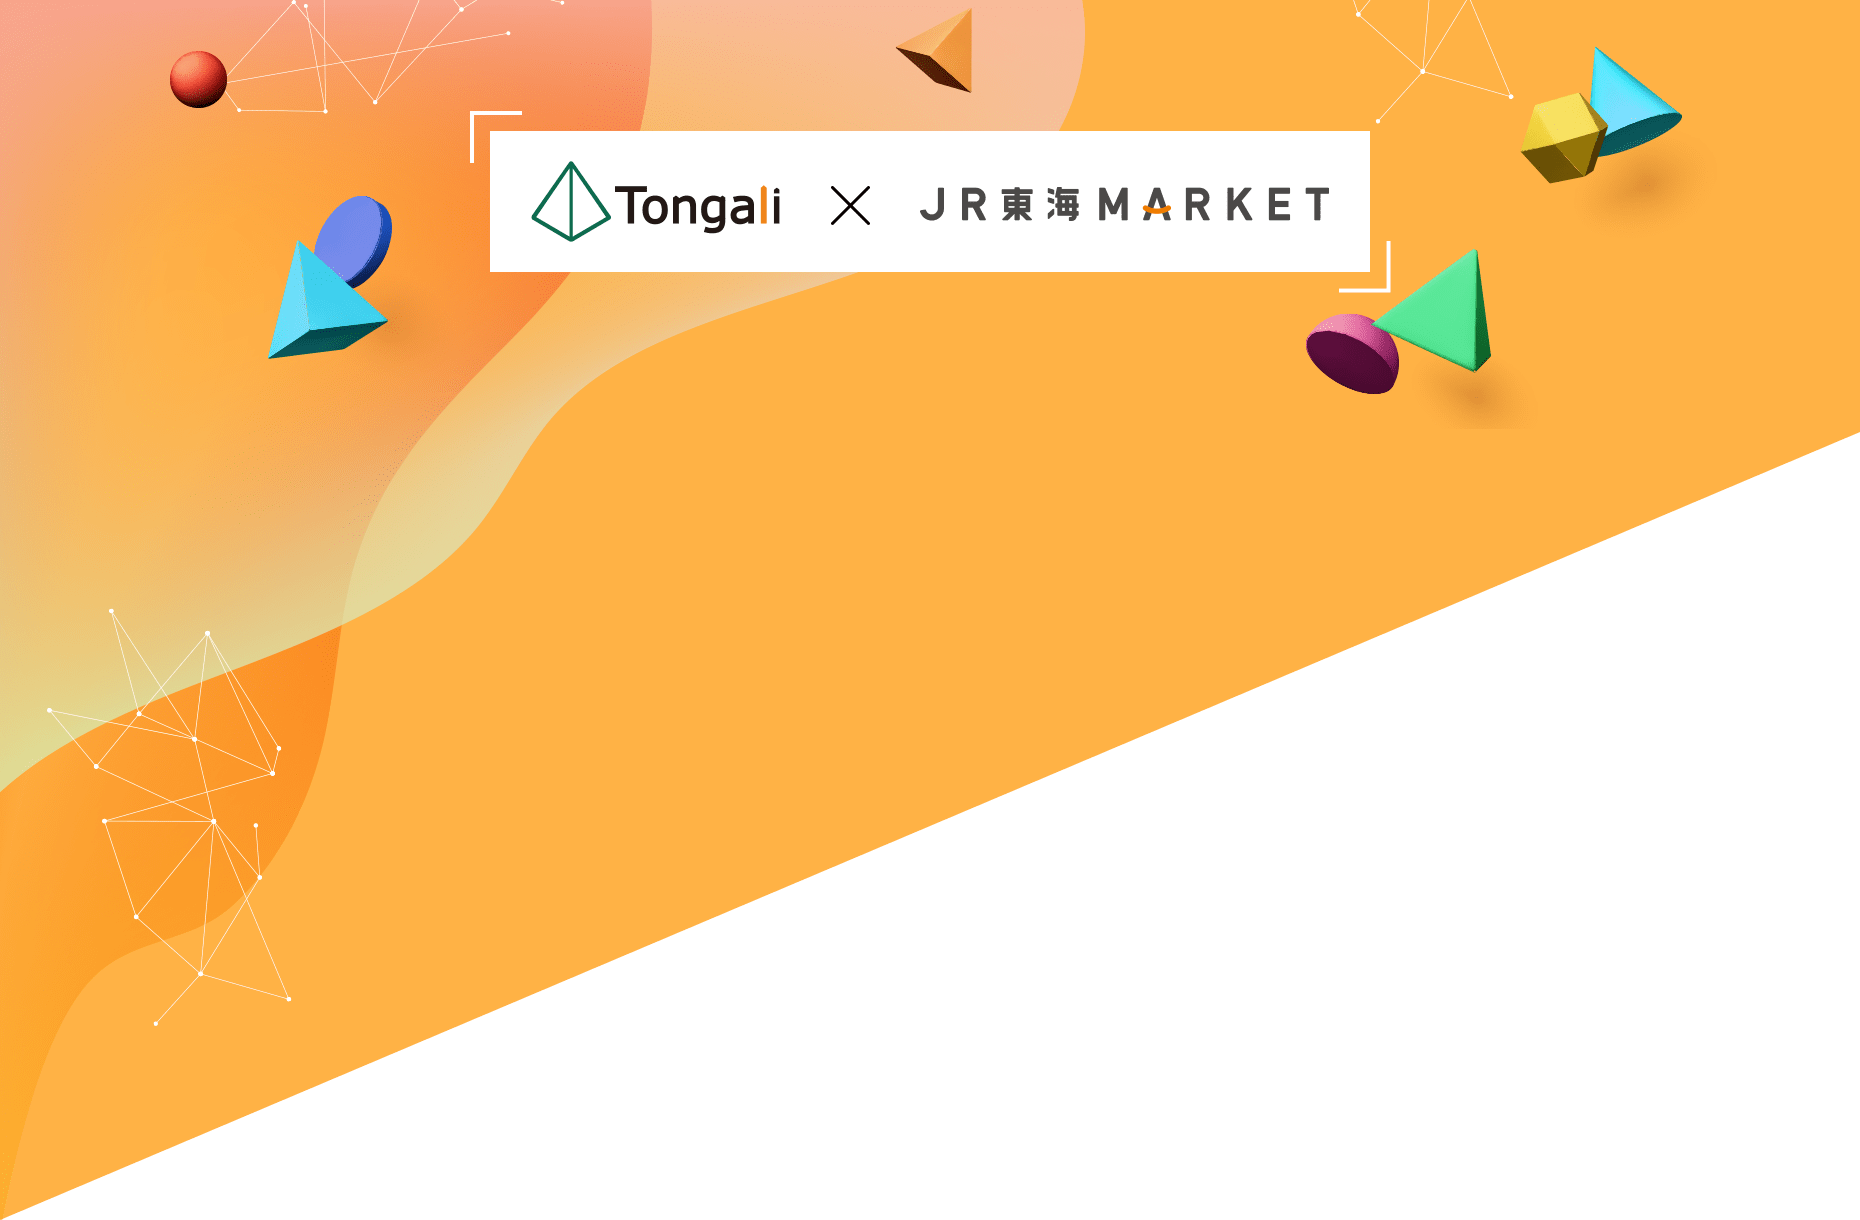 Tongali × JR東海MARKET